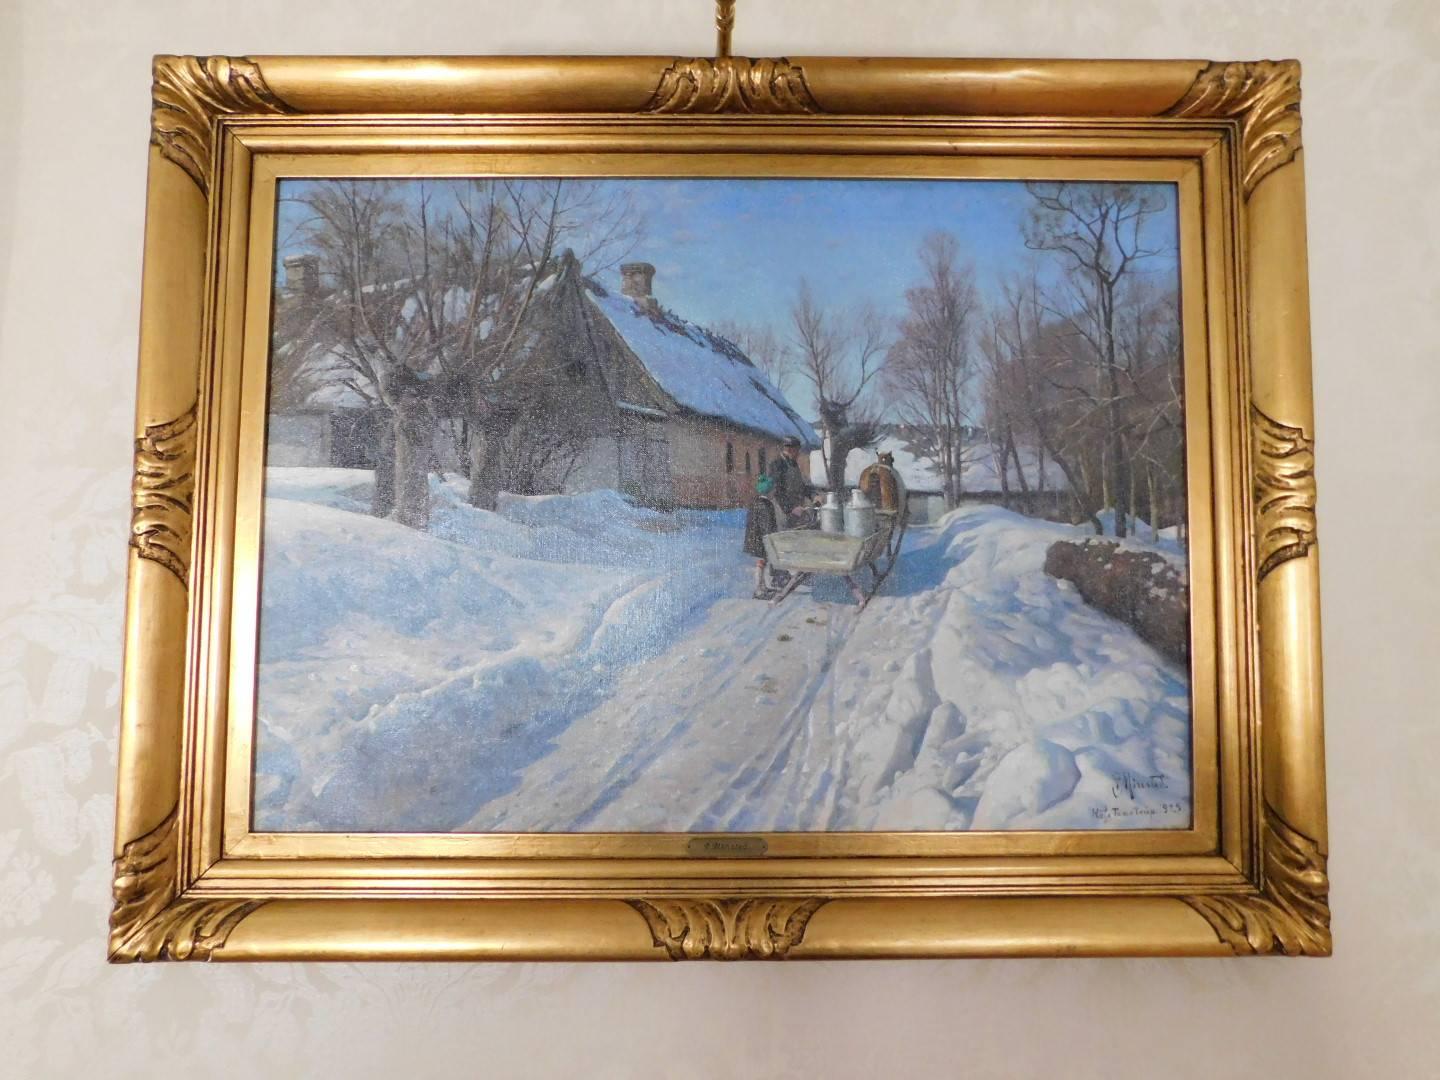 Peder Mønsted: Winter landscape with a milkman in Høje Taastrup. Signed and dated P. Mønsted Høje Taastrup 1929. Oil on canvas. Measures: 50.5 × 70.5 cm.